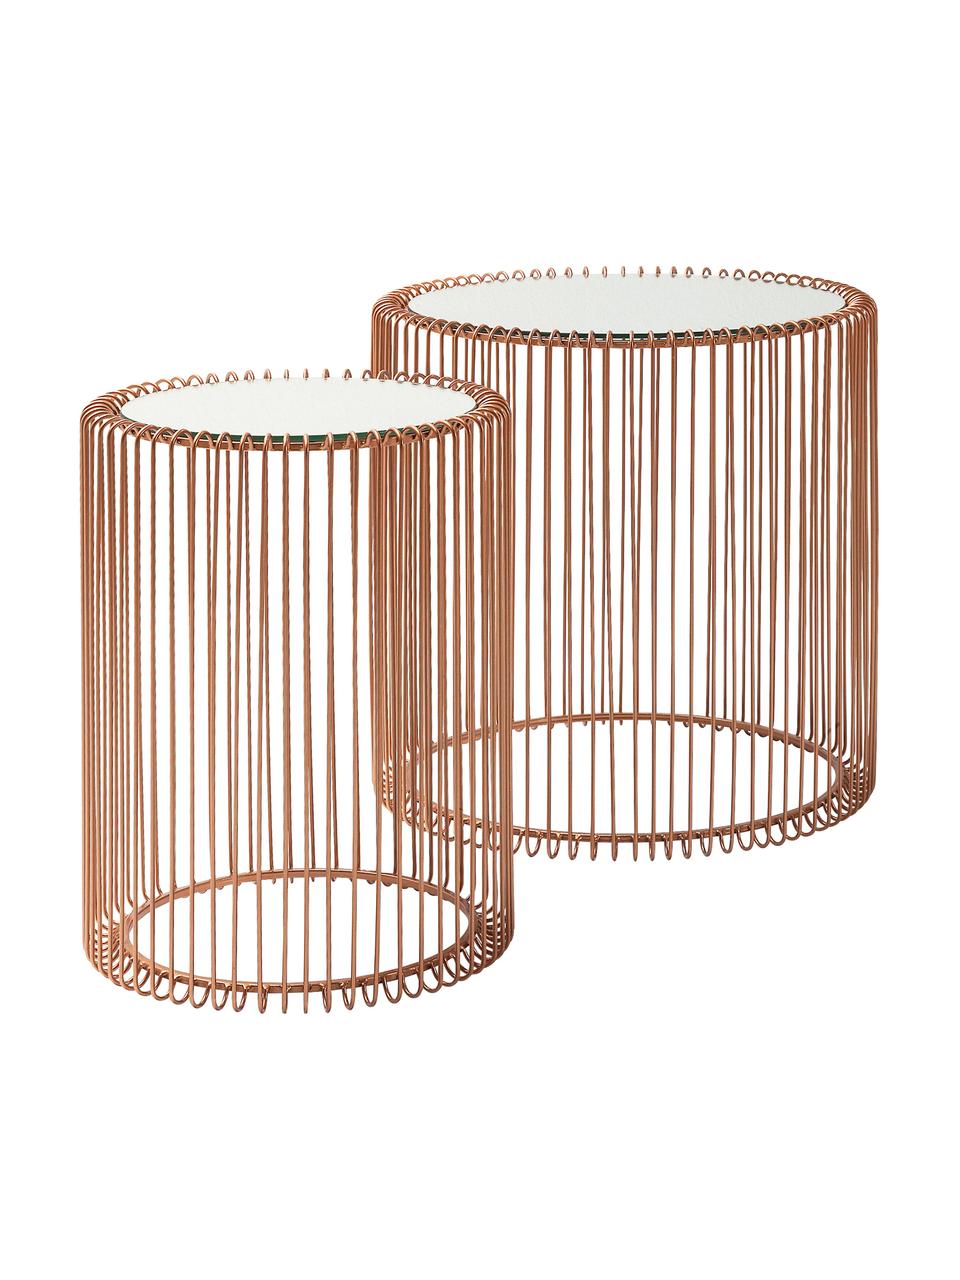 Komplet stolików pomocniczych z metalu ze szklanym blatem Wire, 2 elem., Stelaż: metal malowany proszkowo, Blat: szkło hartowane foliowane, Miedź, Komplet z różnymi rozmiarami